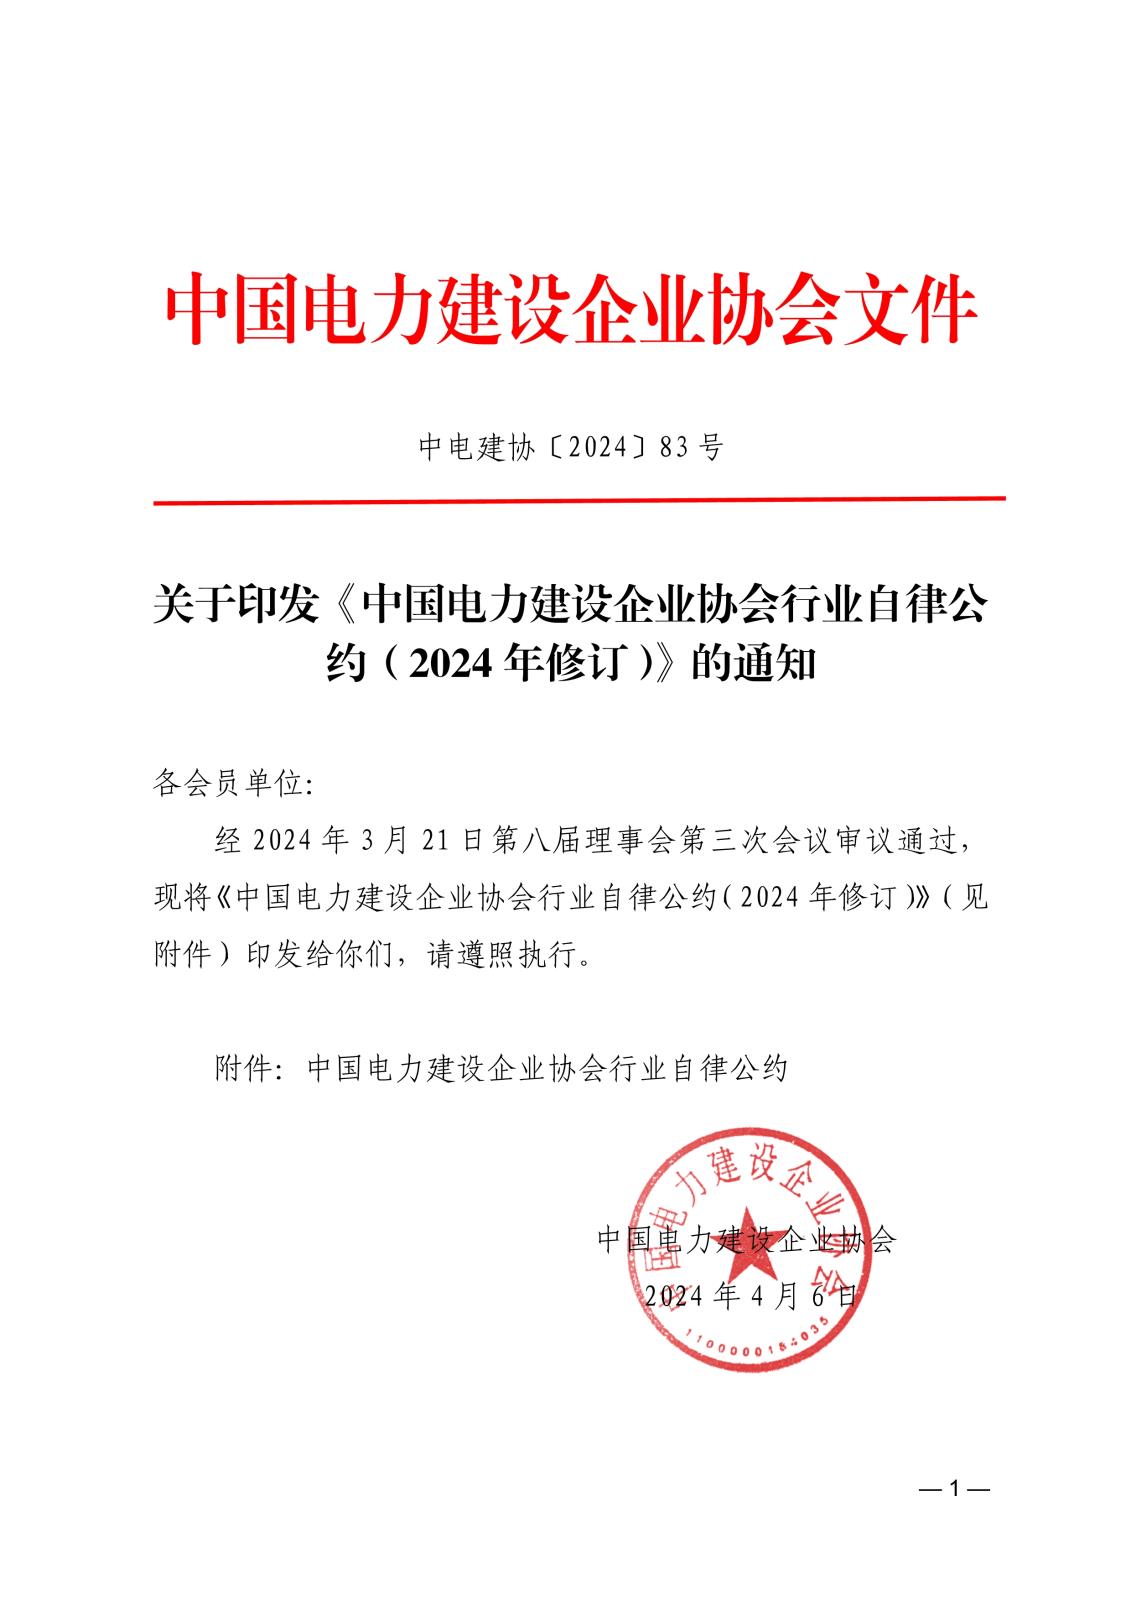 关于印发《中国电力建设企业协会行业自律公约（2024年修订）》的通知_1.jpg